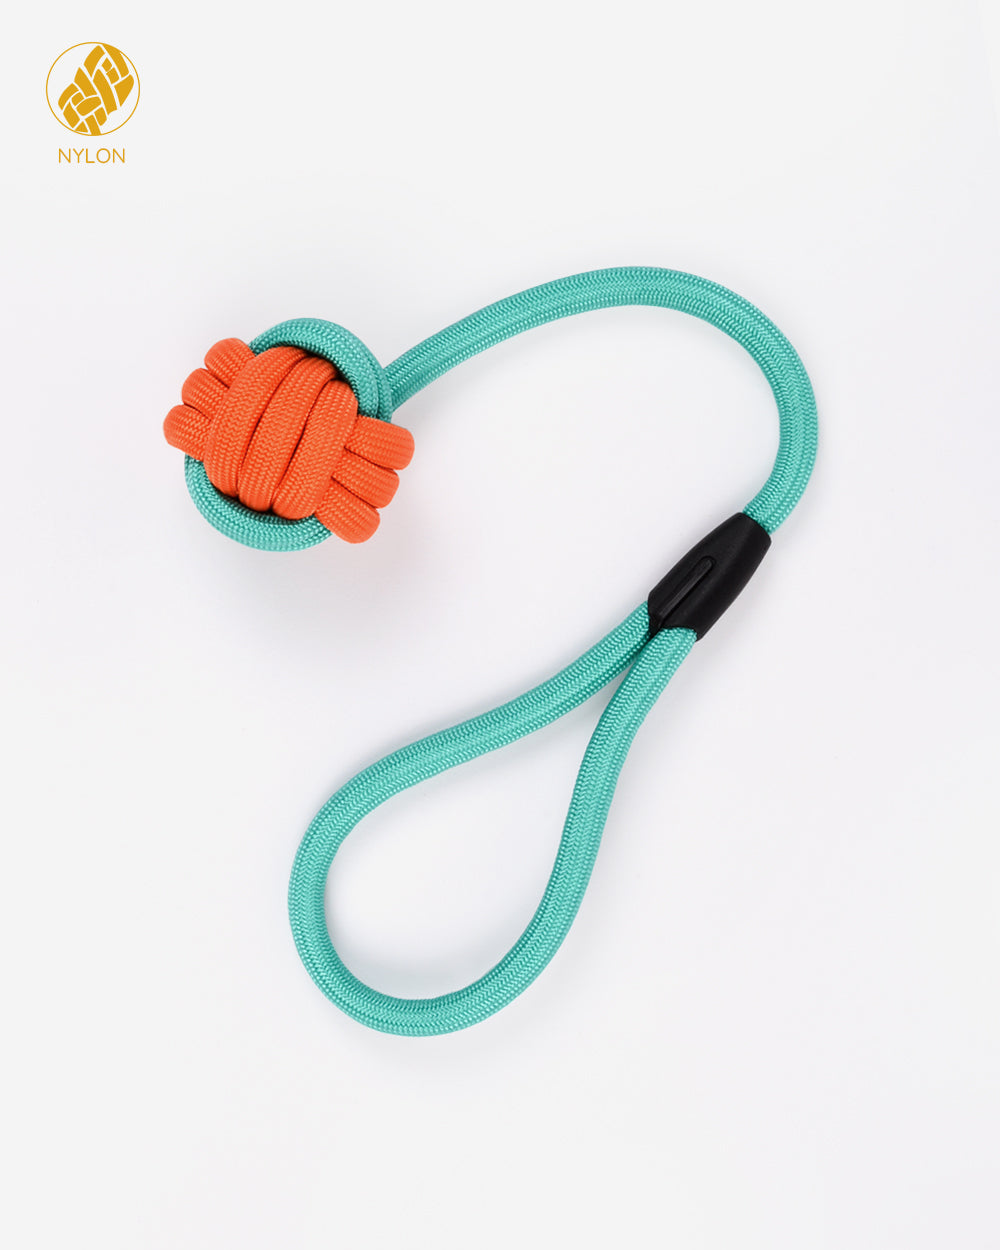 尼龍繩和球拖輪玩具帶環 - 橙綠